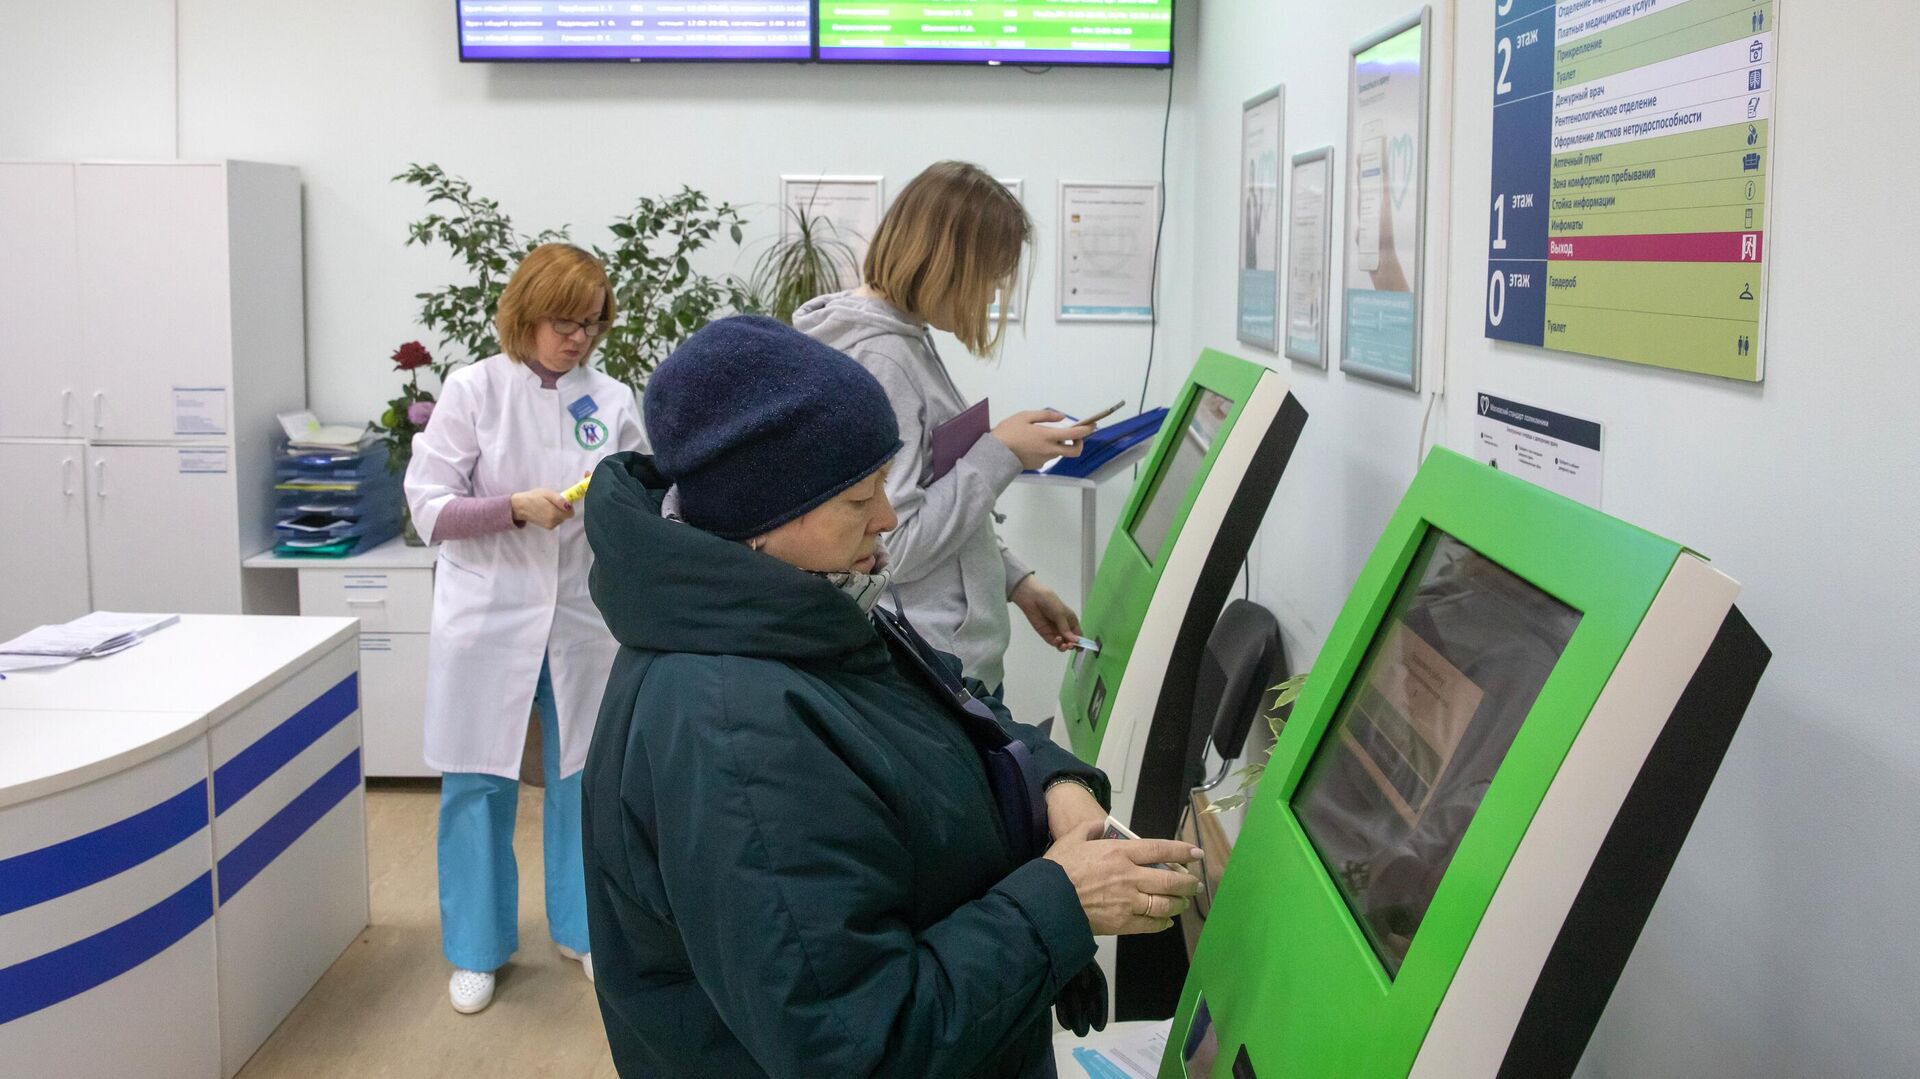  Пациенты записываются на прием к врачу через электронные терминалы в Москве   - РИА Новости, 1920, 08.10.2021